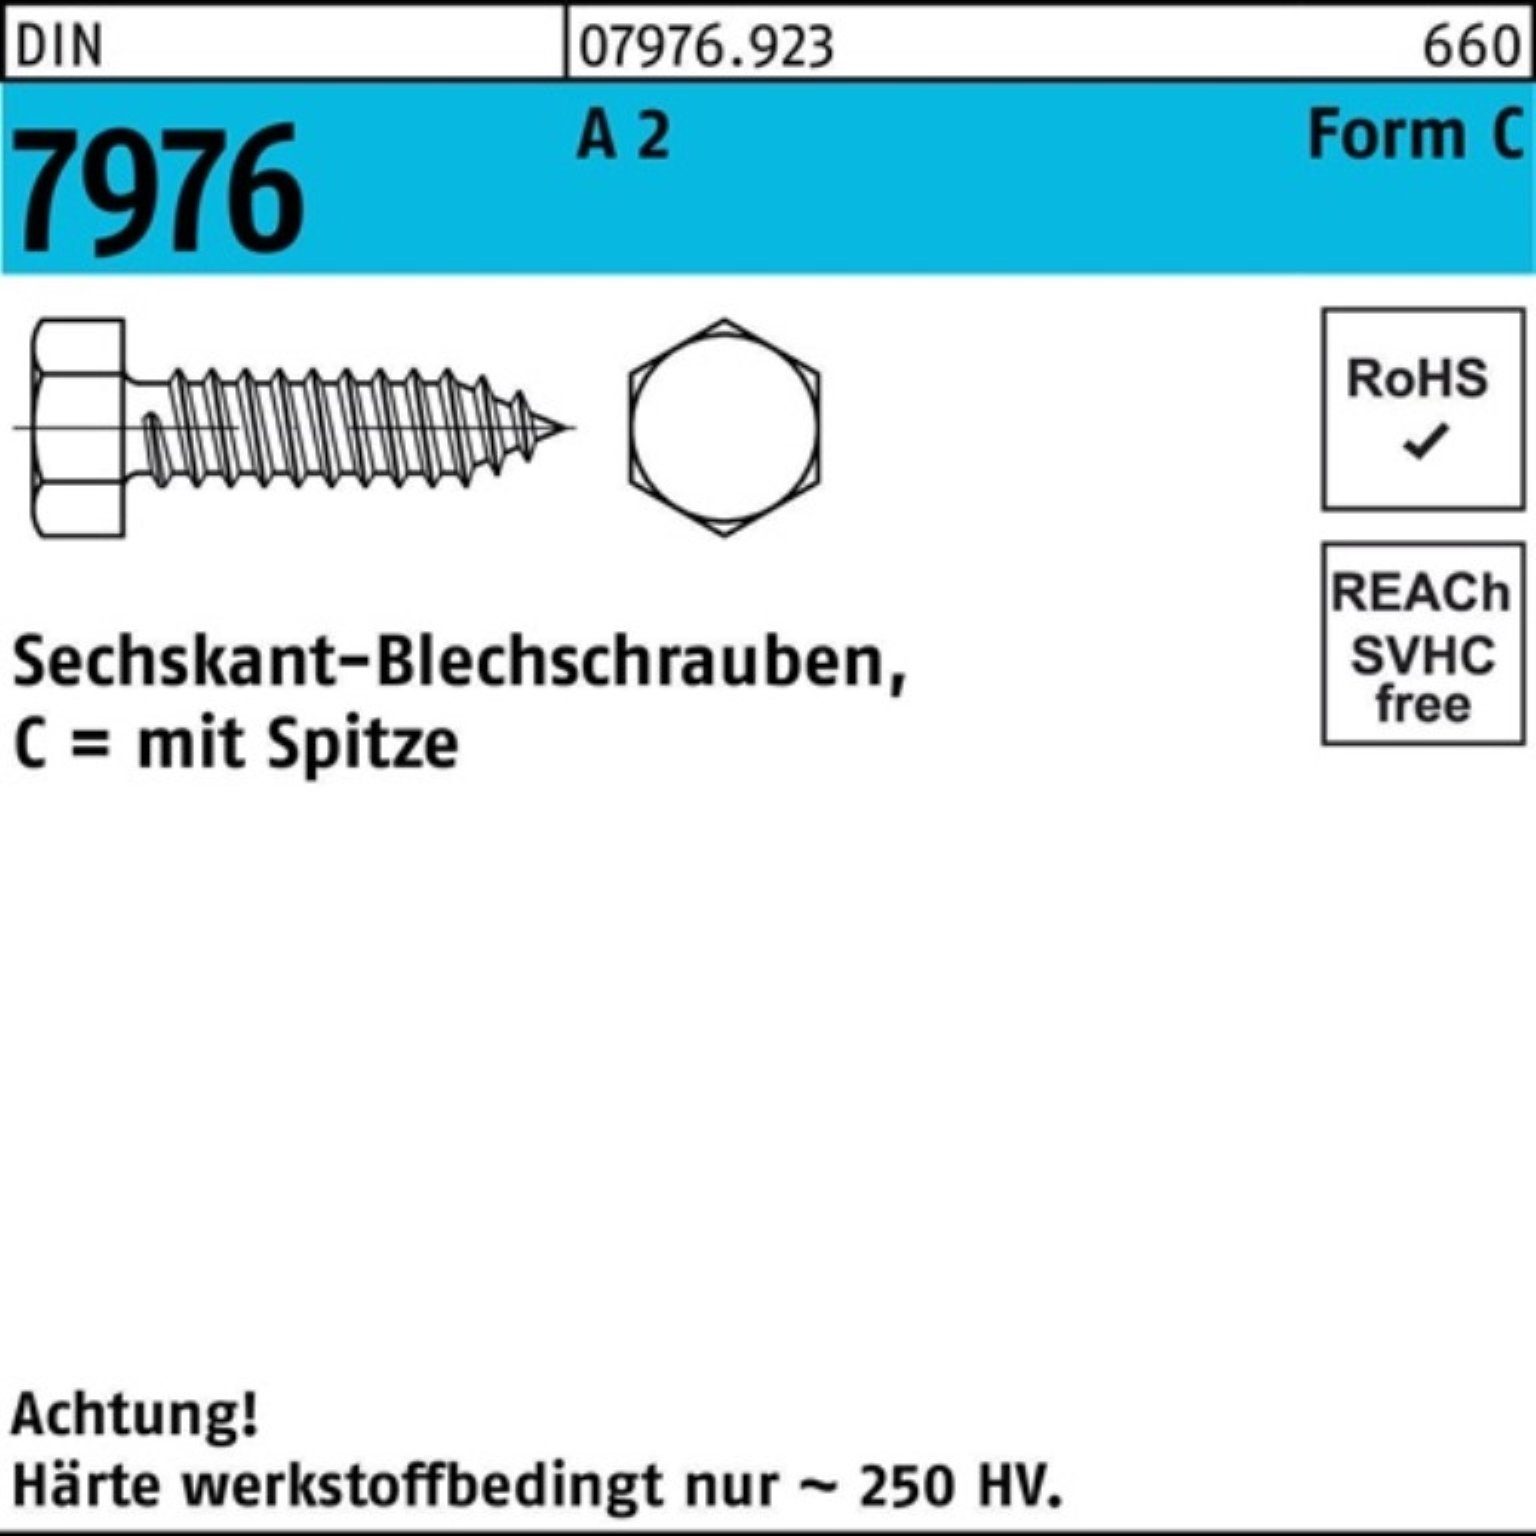 A 7976 500er 2 Blechschraube 4,2x Sechskant/Spitze 22 500 S Blechschraube Pack C Reyher DIN